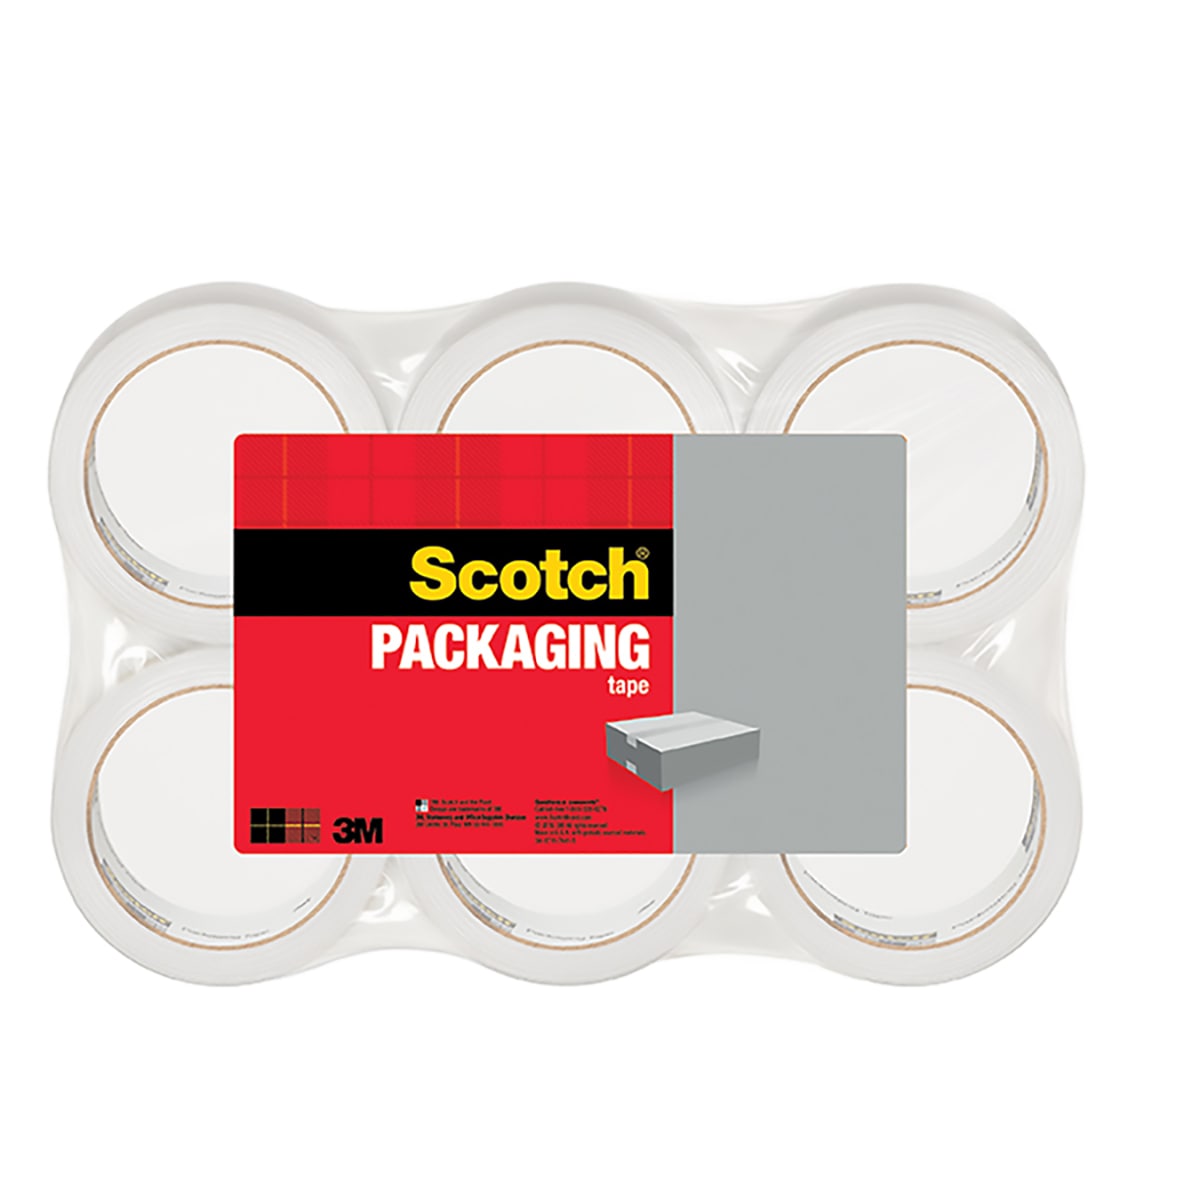 Scotch Packaging Tape Heavy Duty, School Supplies